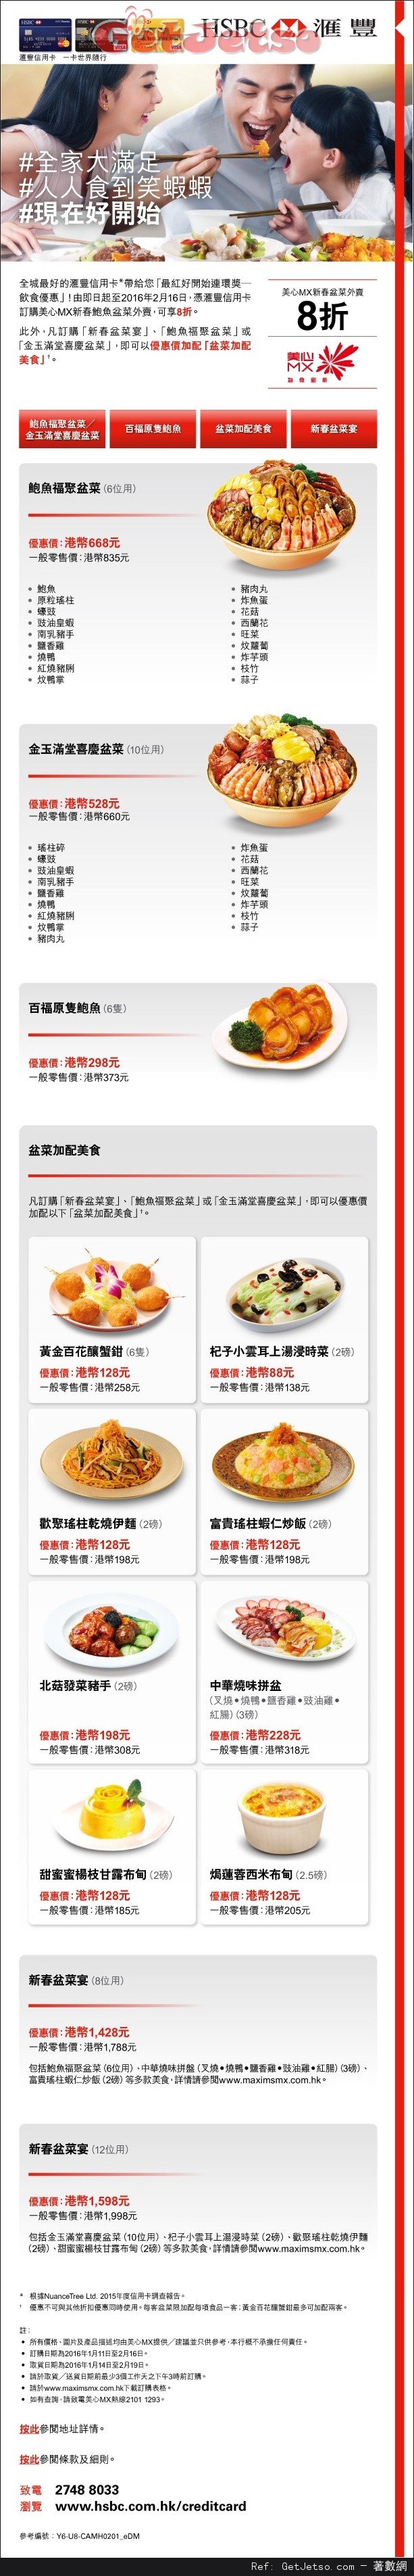 滙豐信用卡享美心MX新春鮑魚盆菜外賣8折優惠(至16年2月16日)圖片1